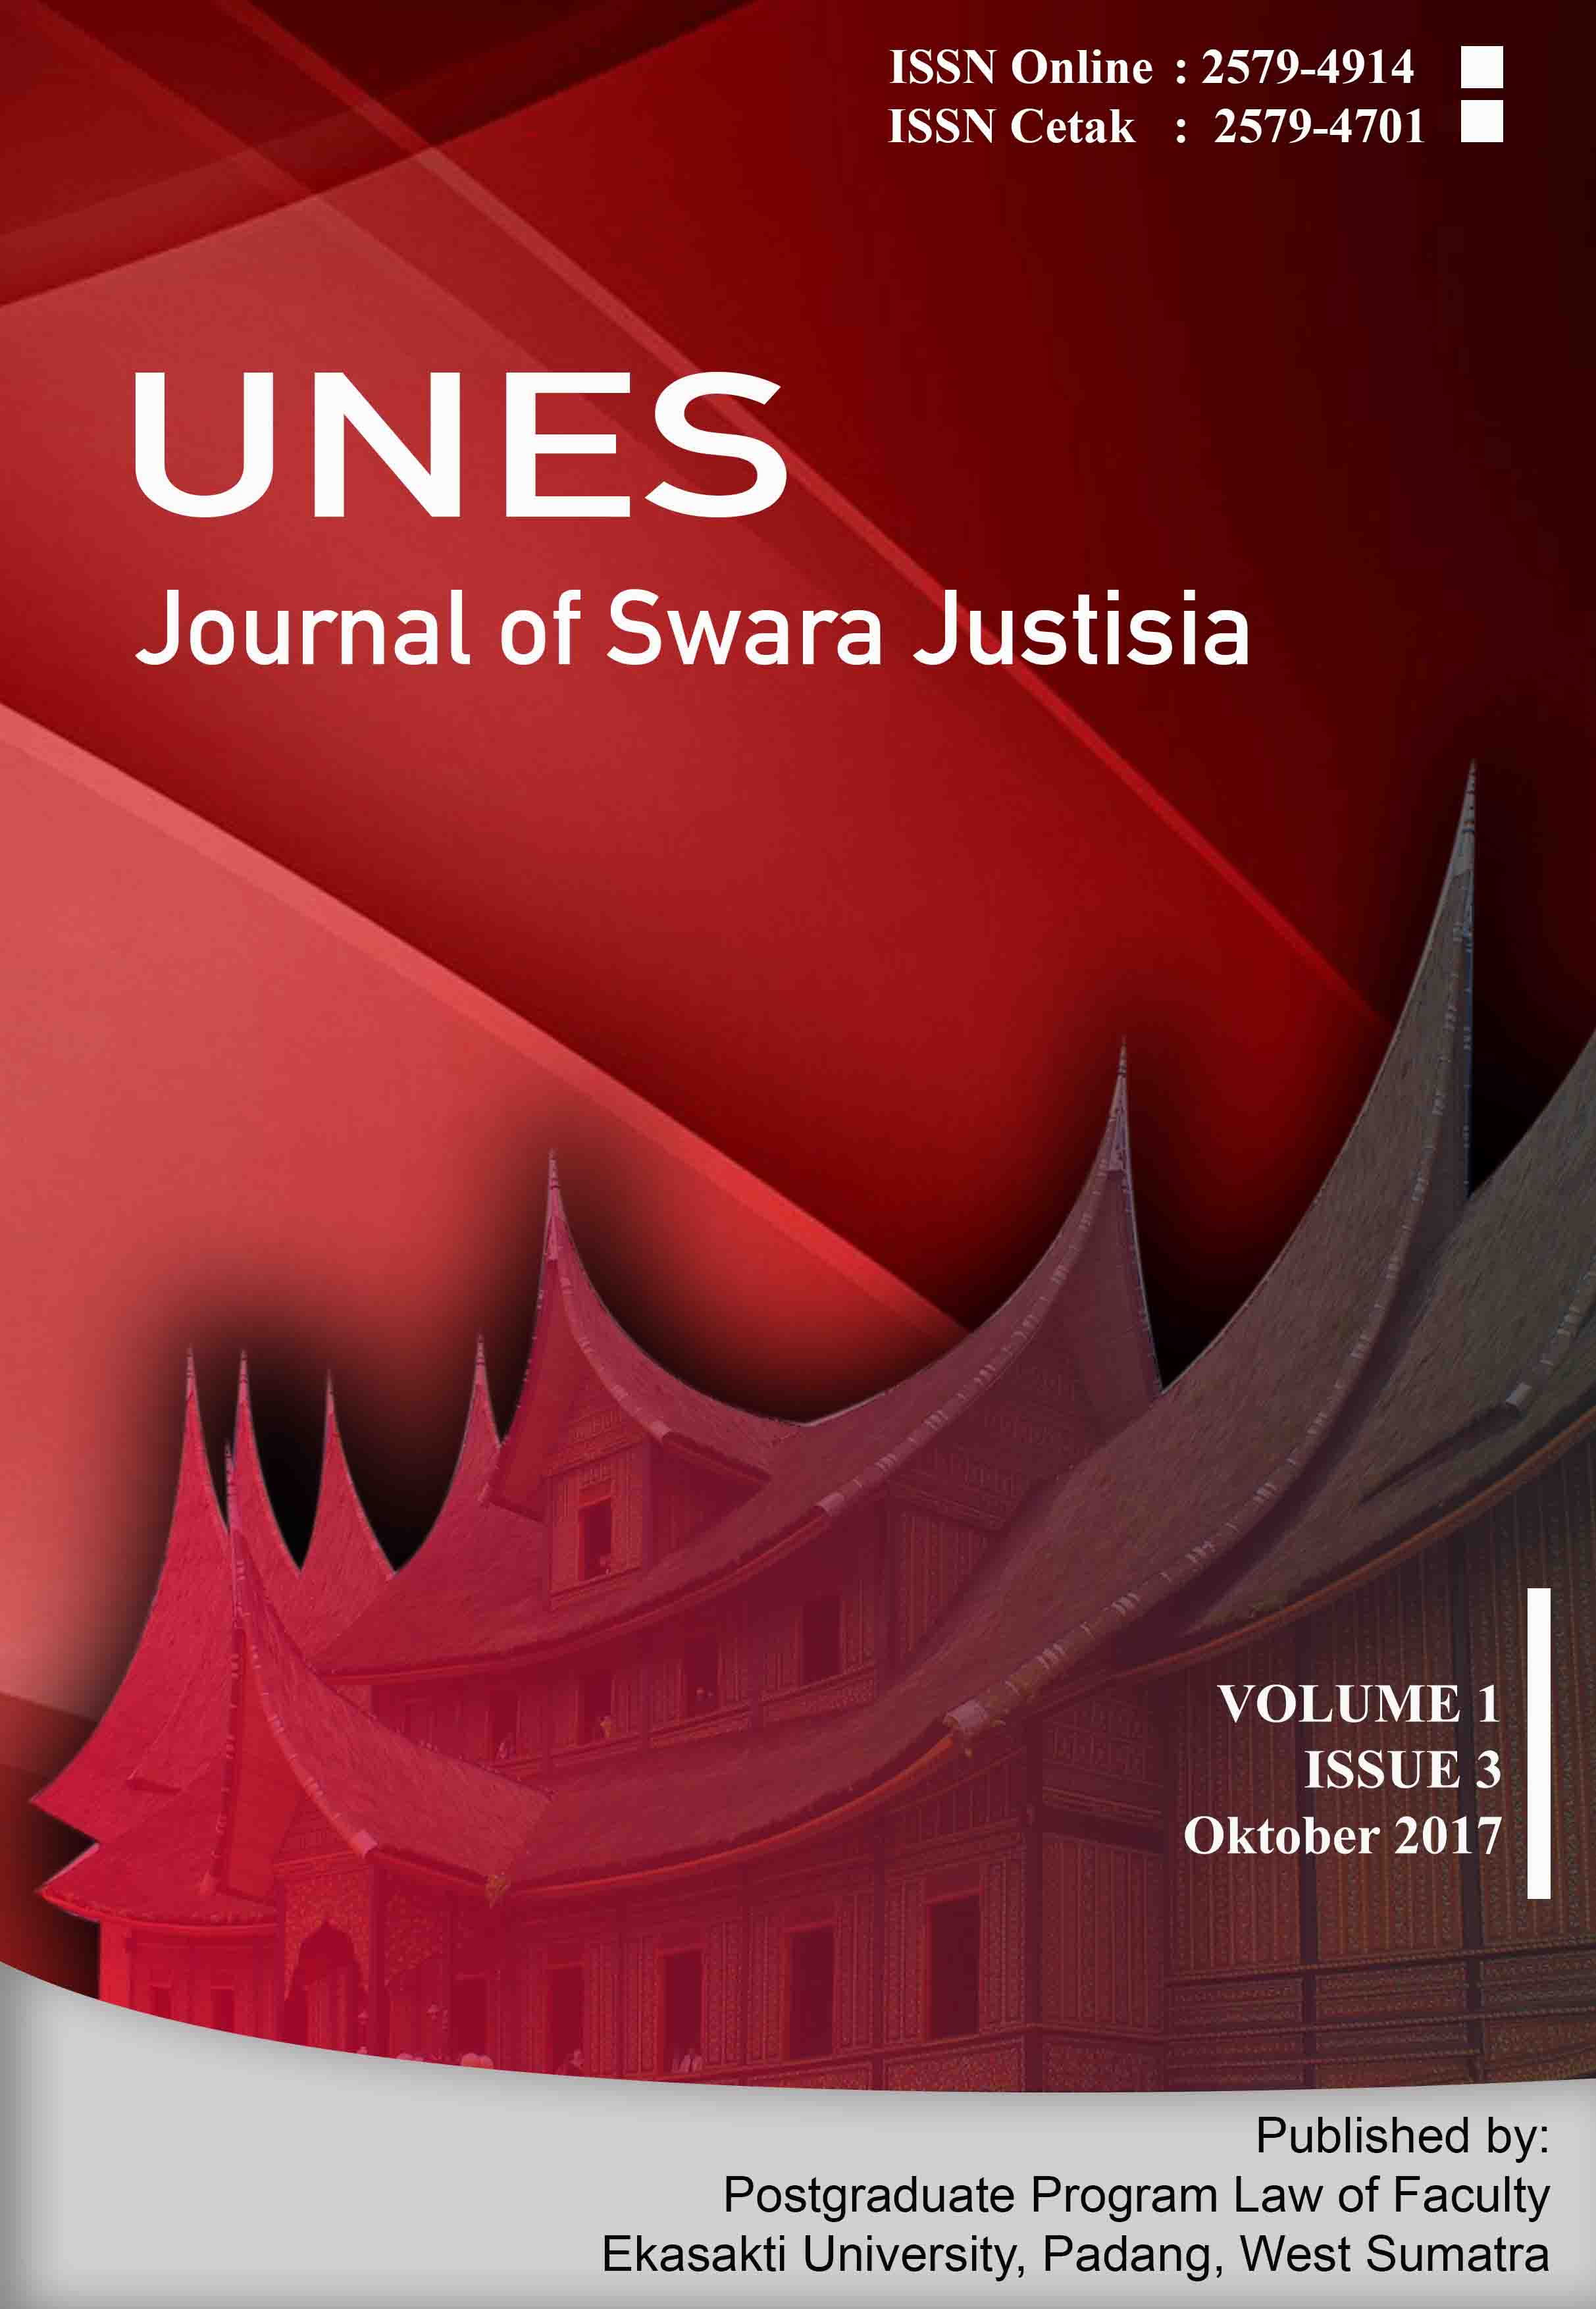 								View Vol. 1 No. 3 (2017): Unes Journal of Swara Justisia (Oktober 2017)
							